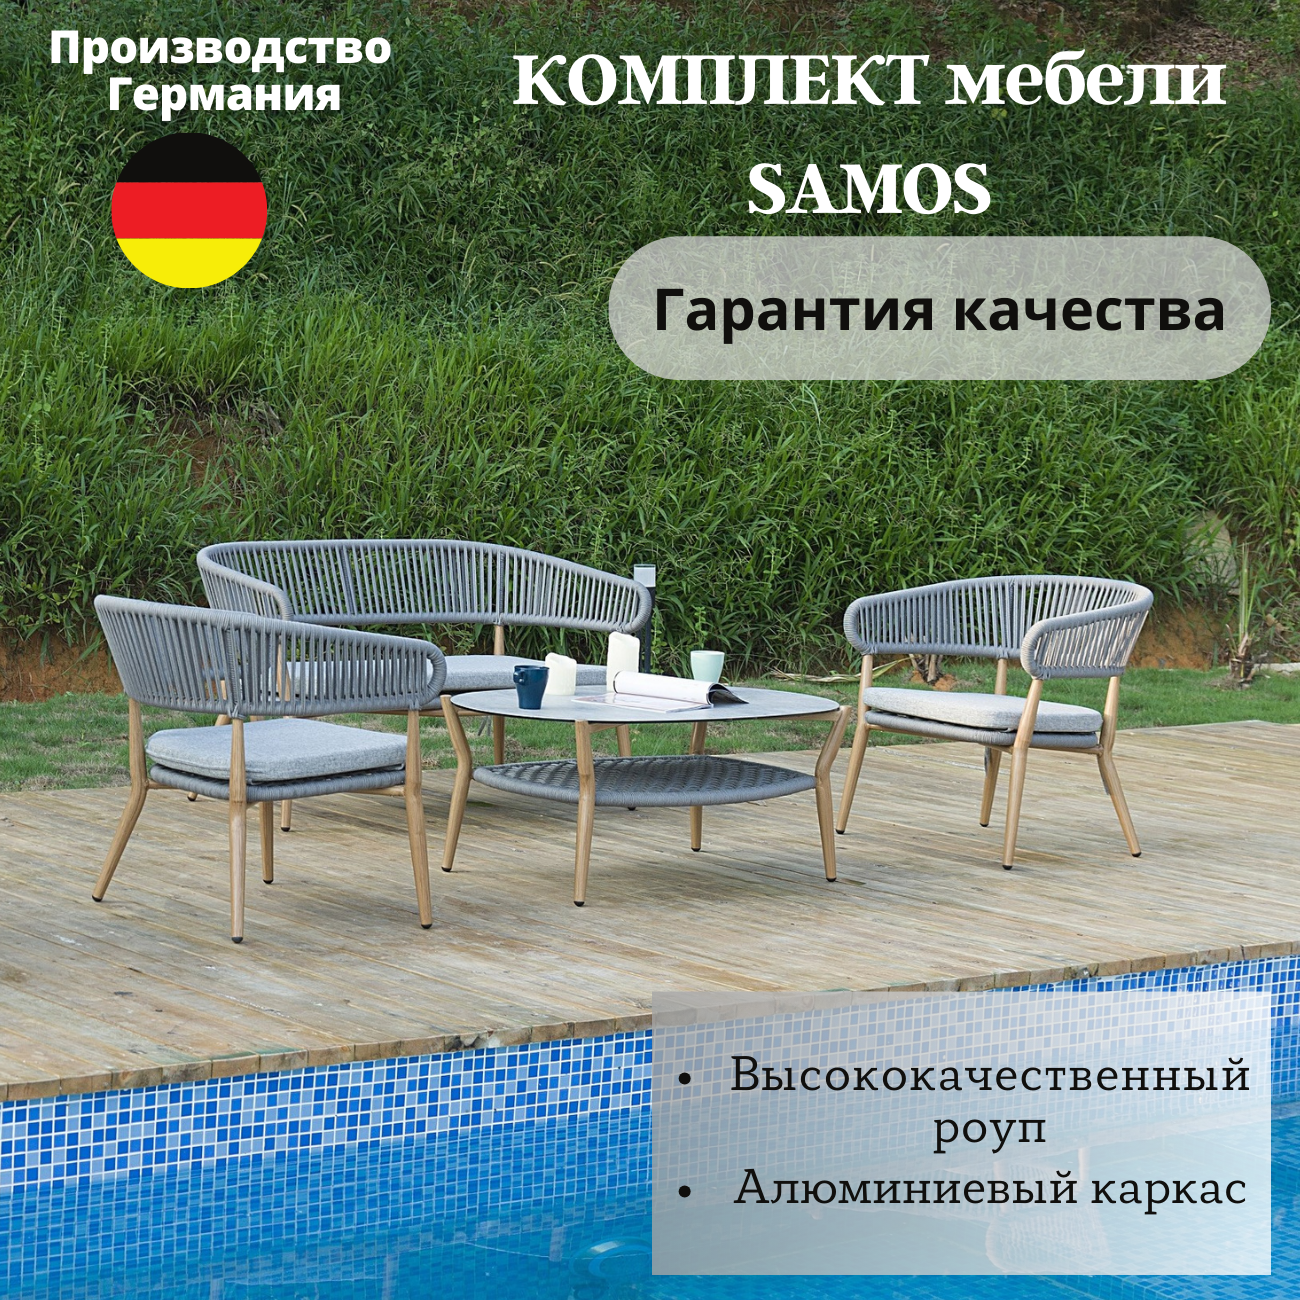 Комплект мебели для сада Konway SAMOS, диван + 2 кресла + стол, роуп серый/алюминий имитация дерева, для дачи, сауны, бассейна, веранды